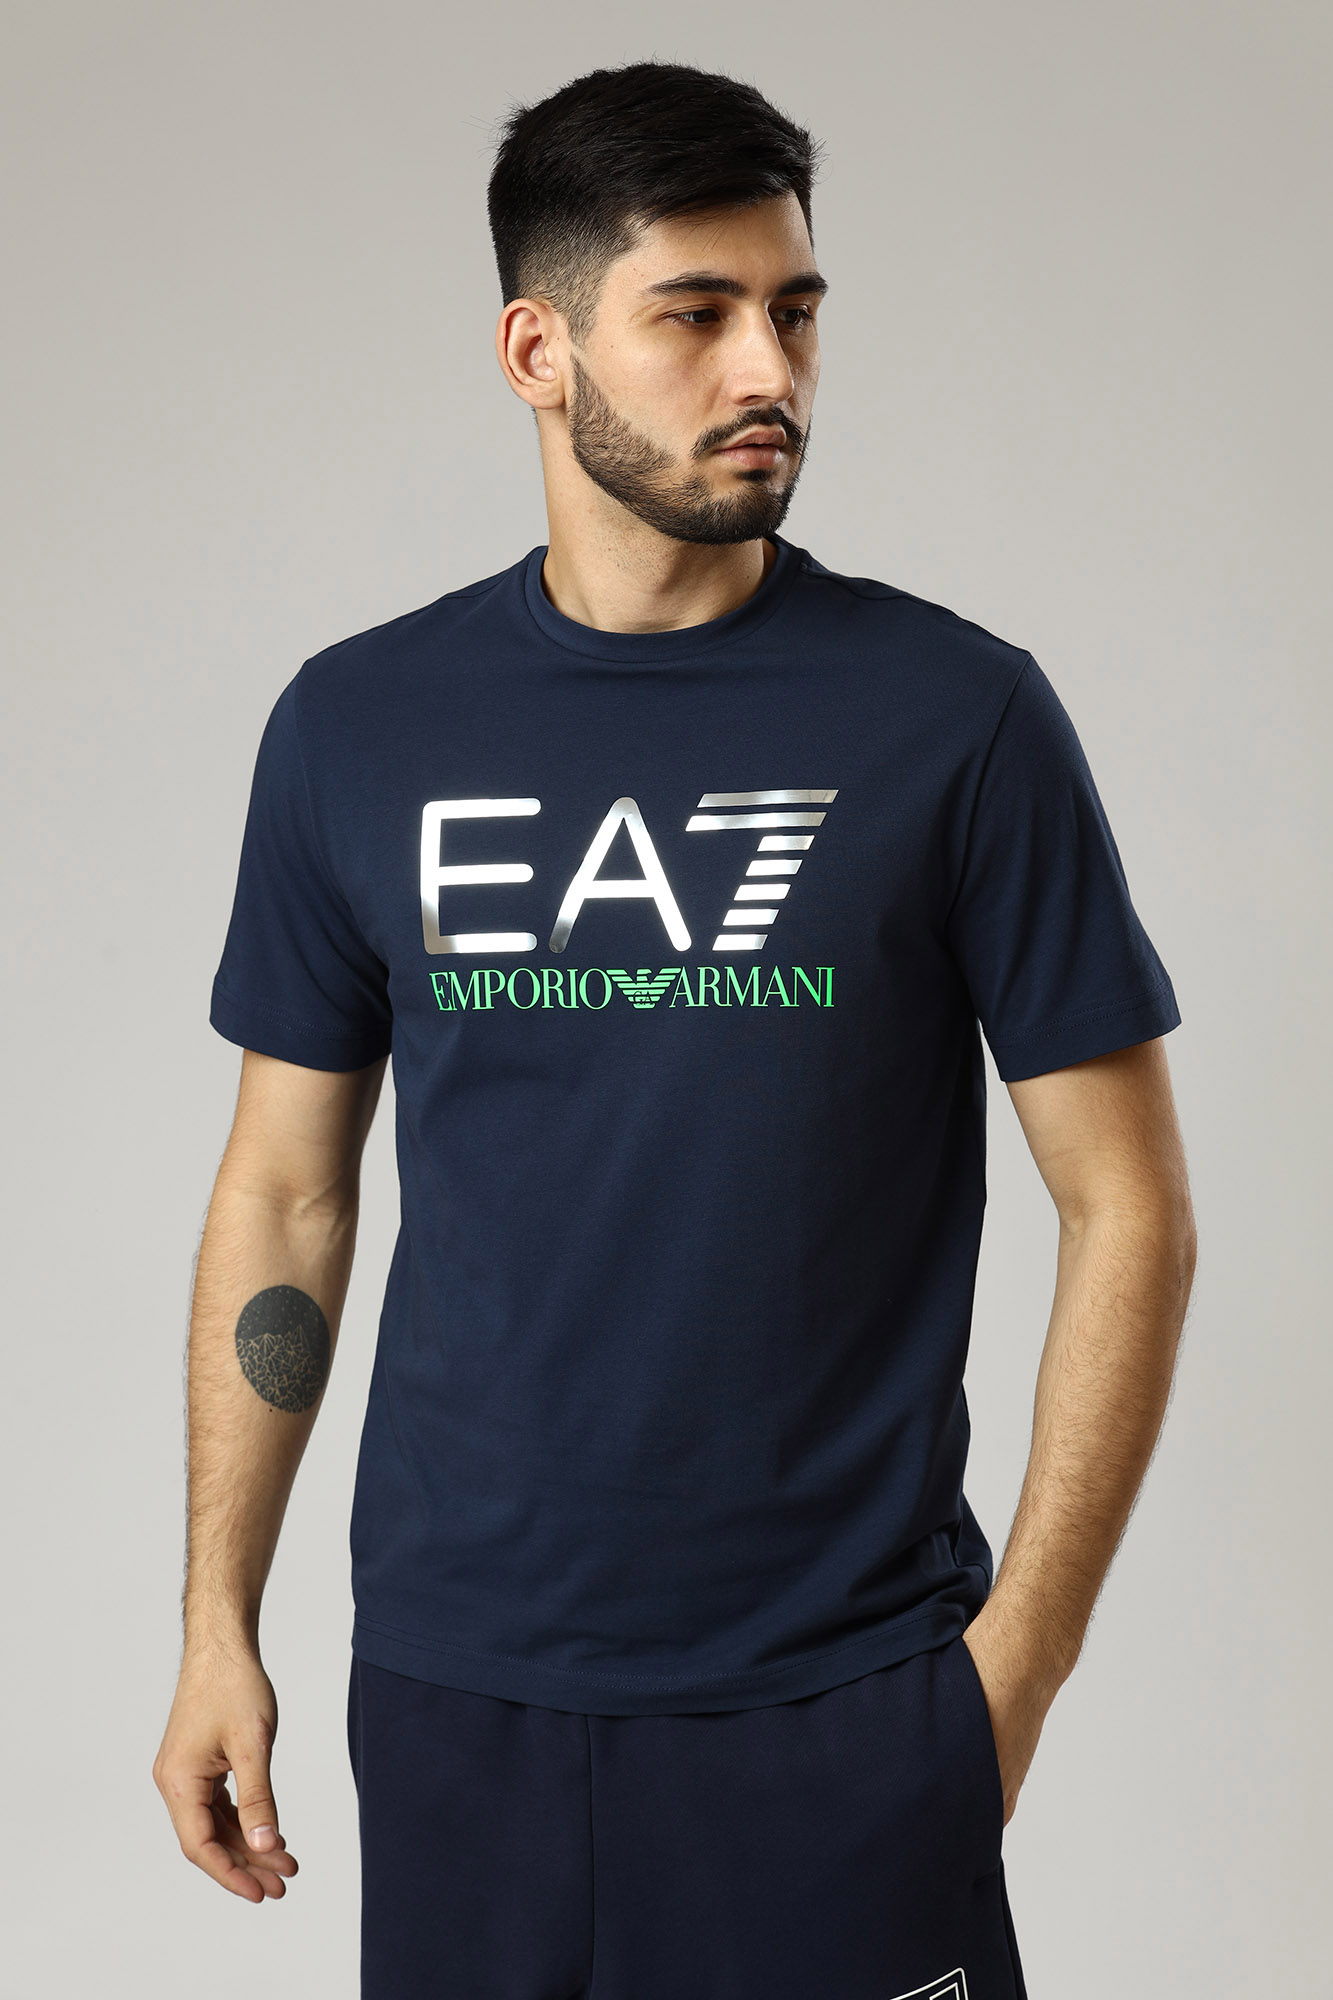 Мужские футболки casual EMPORIO ARMANI - купить в интернет